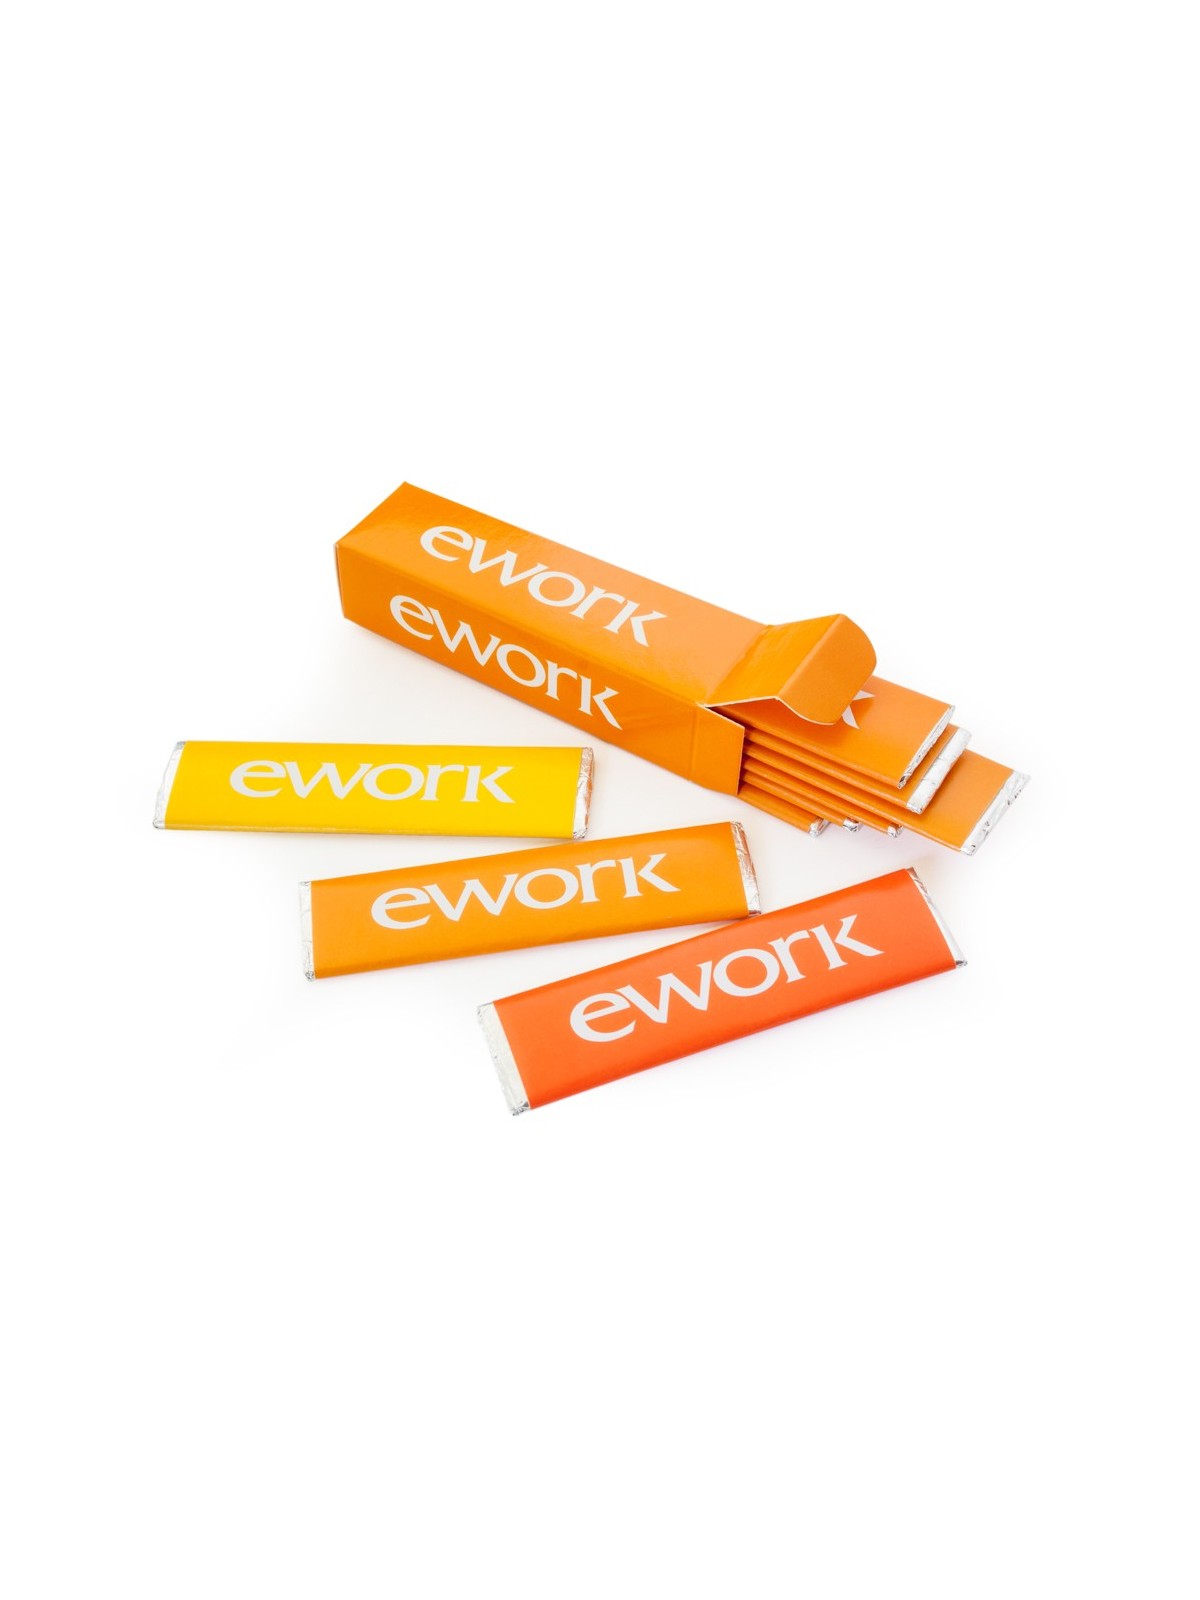 65-001 Boite Chewing gum personnalisable personnalisé